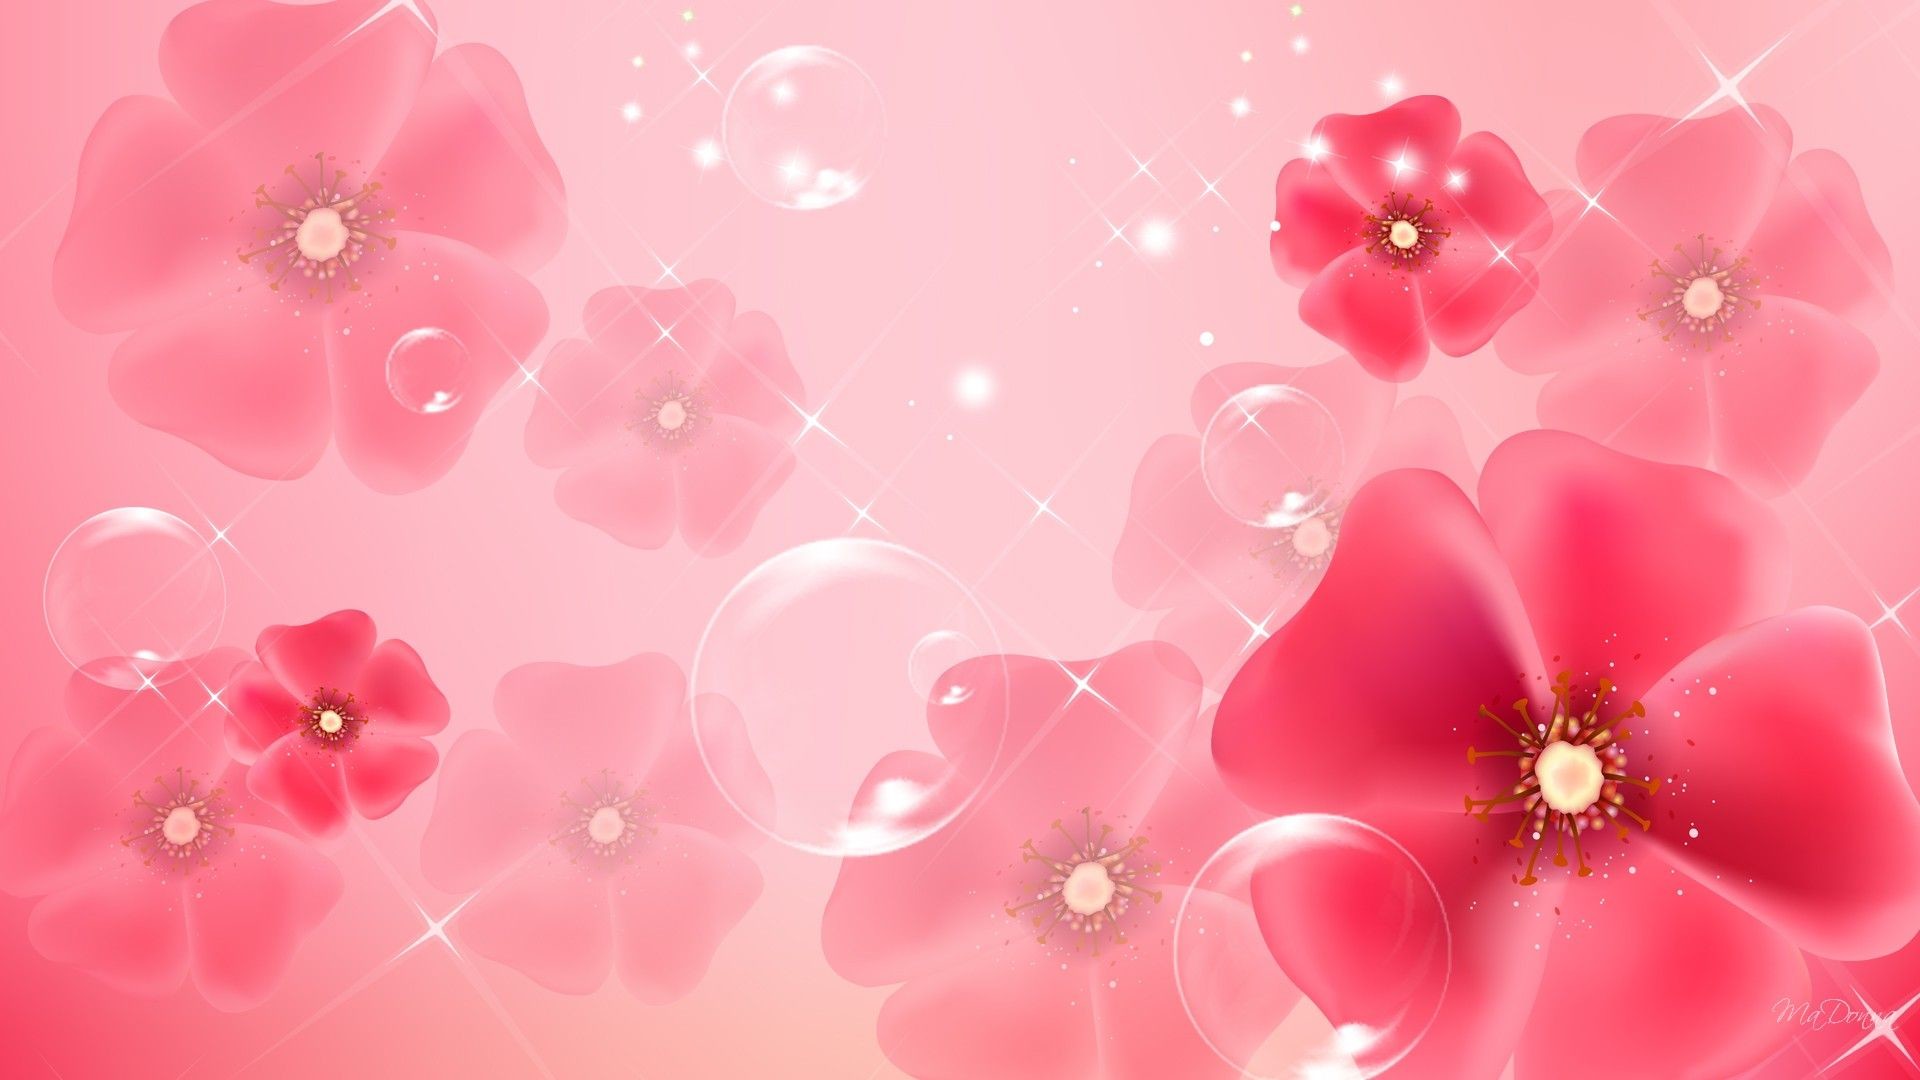 Light Pink Desktop Wallpapers. Download